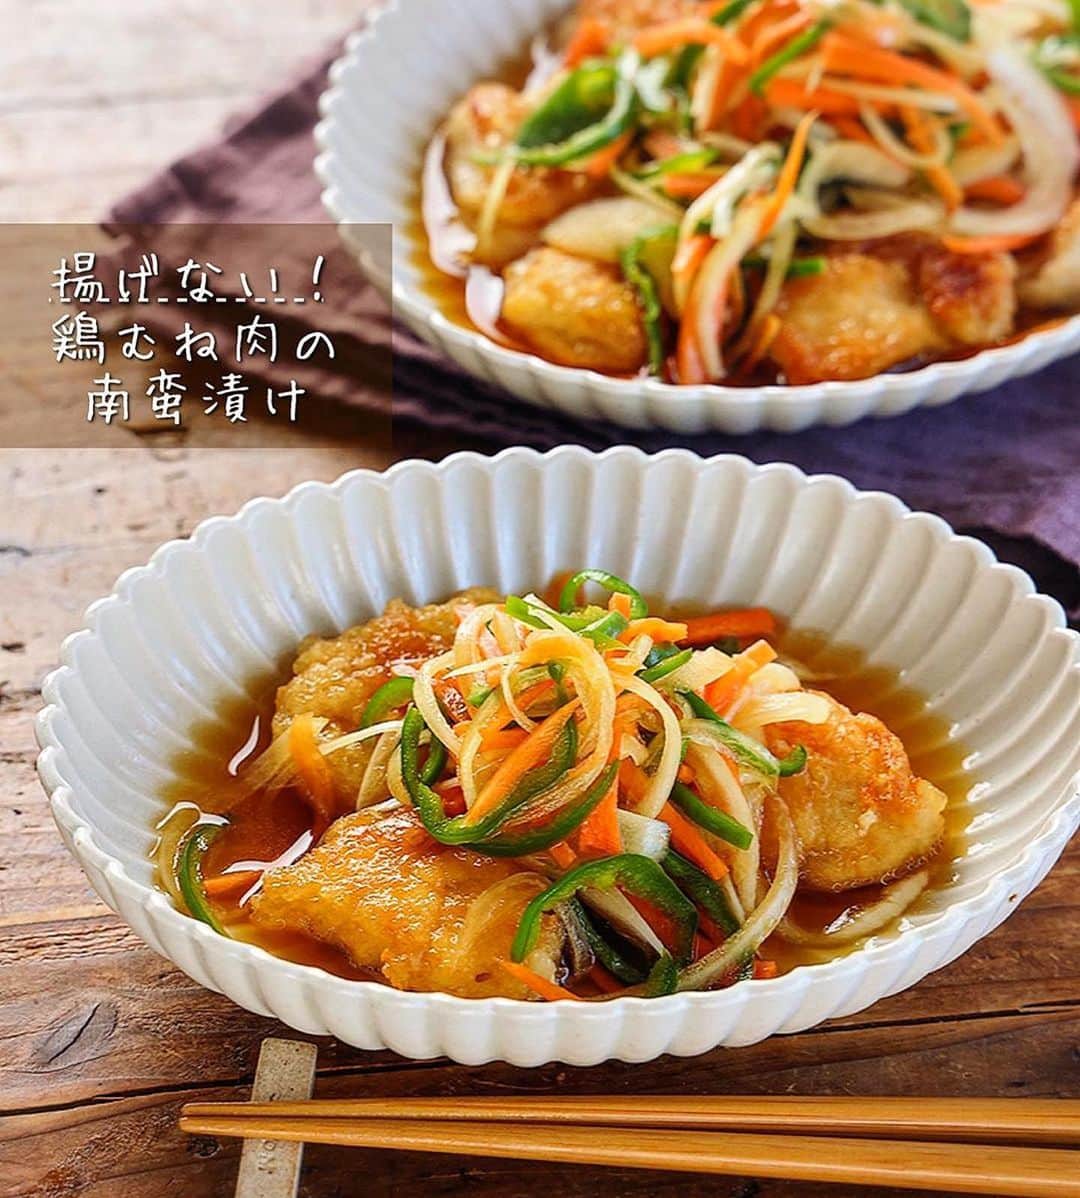 Mizuki【料理ブロガー・簡単レシピ】さんのインスタグラム写真 - (Mizuki【料理ブロガー・簡単レシピ】Instagram)「・作り置きにも🌸 ⁡ ［#レシピ ］ ーーーーーーーーーーーーーーー 揚げない！鶏むね肉の南蛮漬け ーーーーーーーーーーーーーーー ⁡ ⁡ ⁡ おはようございます☺️ ⁡ 今日ご紹介させていただくのは \ 揚げない！鶏むね肉の南蛮漬け / (再掲載) ⁡ 鶏肉は焼くだけ💕 野菜たっぷりでヘルシー🫑 南蛮酢は酸っぱ過ぎず甘過ぎない まろやかな味わいに仕上げました✨ ⁡ 冷蔵庫で3〜4日保存できて 作り置きにもおすすめですよー😋 汁気を切ればお弁当にも使えるので よかったらお試し下さいね💕 ⁡ ⁡ ⁡ 💬💬💬 謎の暮らしアカウント作りました🏠 変なライブはこっちでやってます🤫 →(@mizuki_kurashi ) ⁡ ⁡ 【簡単・時短・節約レシピ更新中🔻】 @mizuki_31cafe ⁡ ⁡ ⁡ ＿＿＿＿＿＿＿＿＿＿＿＿＿＿＿＿＿＿＿ 【2人分】 鶏むね肉...1枚(250g) ●酒...小1 ●塩こしょう...少々 片栗粉...適量 サラダ油...大1 玉ねぎ...小1/2個 人参...1/3本 ピーマン...2個 ☆水...100ml ☆和風顆粒だし...小1/4 ☆酢...大3 ☆砂糖・醤油...各大2 ⁡ 1.玉ねぎは薄切り、人参とピーマンは細切りにし、耐熱容器に入れる。☆を加えて混ぜ、600Wのレンジで2分加熱する。 2.鶏肉は1cm厚さの削ぎ切りにし、●を揉み込み片栗粉をまぶす。フライパンにサラダ油を中火で熱し、両面色よく焼いて火を通す。 3.2が熱い内に1に漬ける。 ￣￣￣￣￣￣￣￣￣￣￣￣￣￣￣￣￣￣￣ ⁡ ⁡ 《ポイント》 ♦︎ 漬けてすぐでも、時間を置いてもおいしくいただけます♩ ♦︎工程1ではラップなしでレンチンしています♩レンチンすることで野菜がしんなりして食べやすくなりますよー♩ ♦︎冷蔵庫で3〜4日保存できます♩ ⁡ ⁡ ⁡ ⁡ ⁡ ⁡ 𖤣𖥧𖥣𖡡𖥧𖤣✨ 愛用している調理器具や器などは #楽天ROOMに載せてます ‎𐩢𐩺 (ハイライトから飛べます🛍) ⁡ ⁡ ⁡ ⁡ ⁡ ⁡ 🔶全国の書店・ネット書店で発売中🔶 ⁡ ✼••┈┈┈┈┈••✼••┈┈┈┈┈••✼ 今日のごはんこれに決まり！ ‎𓊆#Mizukiのレシピノート 500品𓊇 ✼••┈┈┈┈┈••✼••┈┈┈┈┈••✼ ⁡ ˗ˏˋ おかげさまで25万部突破 ˎˊ˗ 料理レシピ本大賞準大賞を受賞しました🙇‍♀️ ⁡ 6000点の中からレシピを厳選し まさかの【500レシピ掲載】❣️ 肉や魚のメインおかずはもちろん 副菜、丼、麺、スープ、お菓子 ハレの日のレシピ、鍋のレシピまで 全てこの一冊で完結𓌉◯𓇋✨ ⁡ ⁡ ⁡ ⁡ ⁡ ⁡ #鶏むね肉の南蛮漬けm #鶏むね肉レシピ #鶏むね肉 #南蛮漬け #揚げない #鶏肉レシピ #ピーマンレシピ #煮るだけ #肉豆腐 #節約料理 #簡単料理  #時短料理 #料理 #mizukiレシピ  #アルモンデ #時短レシピ #節約レシピ #簡単レシピ」5月29日 6時22分 - mizuki_31cafe